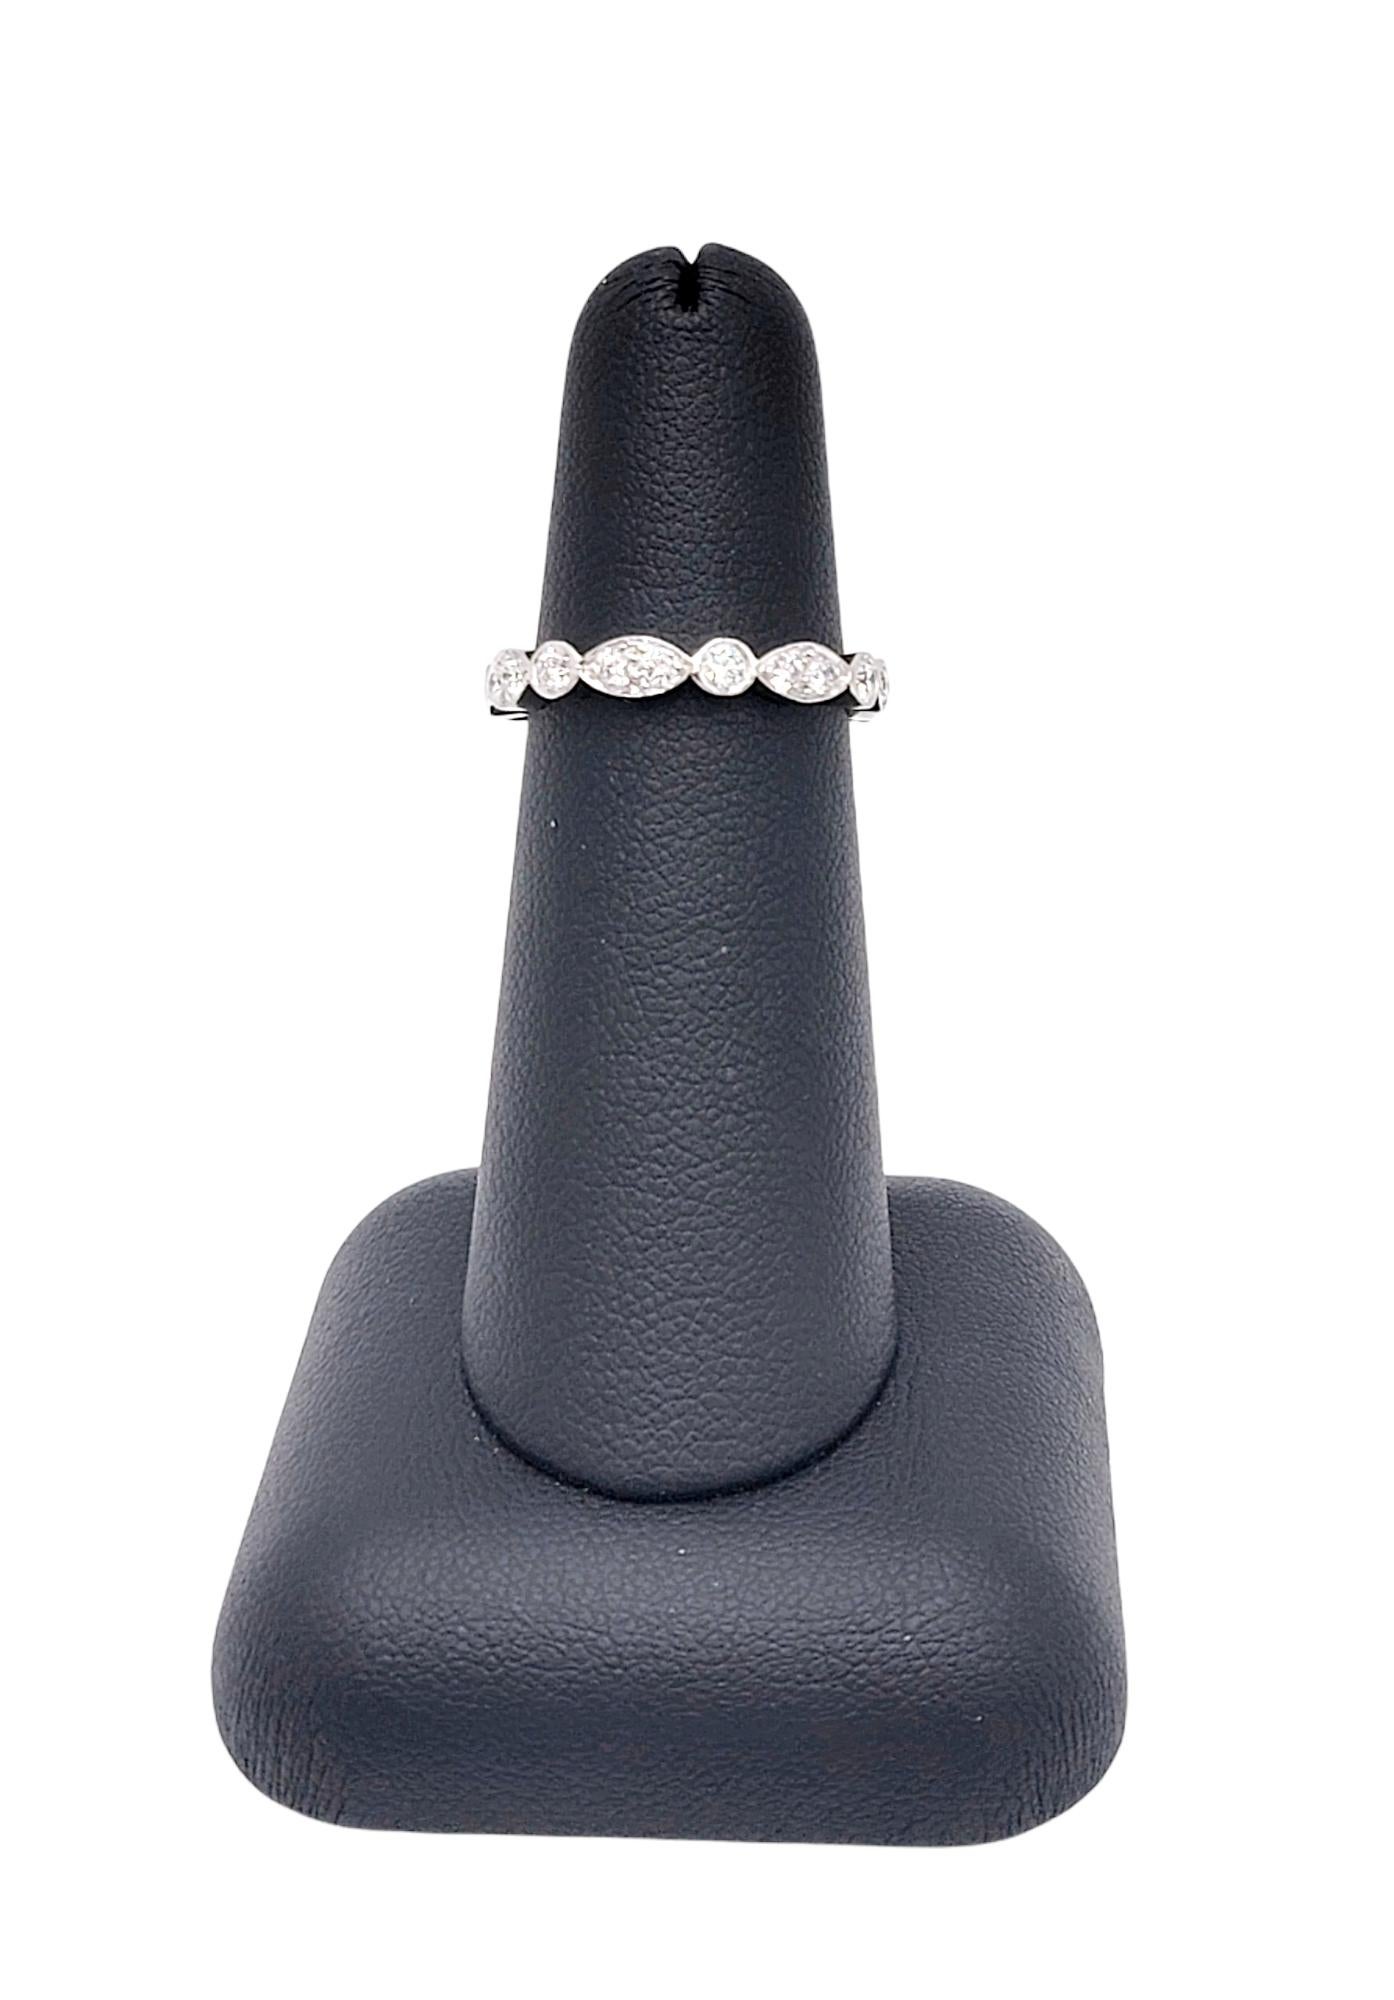 Contemporary Tiffany & Co. Tiffany Jazz .62 Carats Diamond Band Ring in Platinum